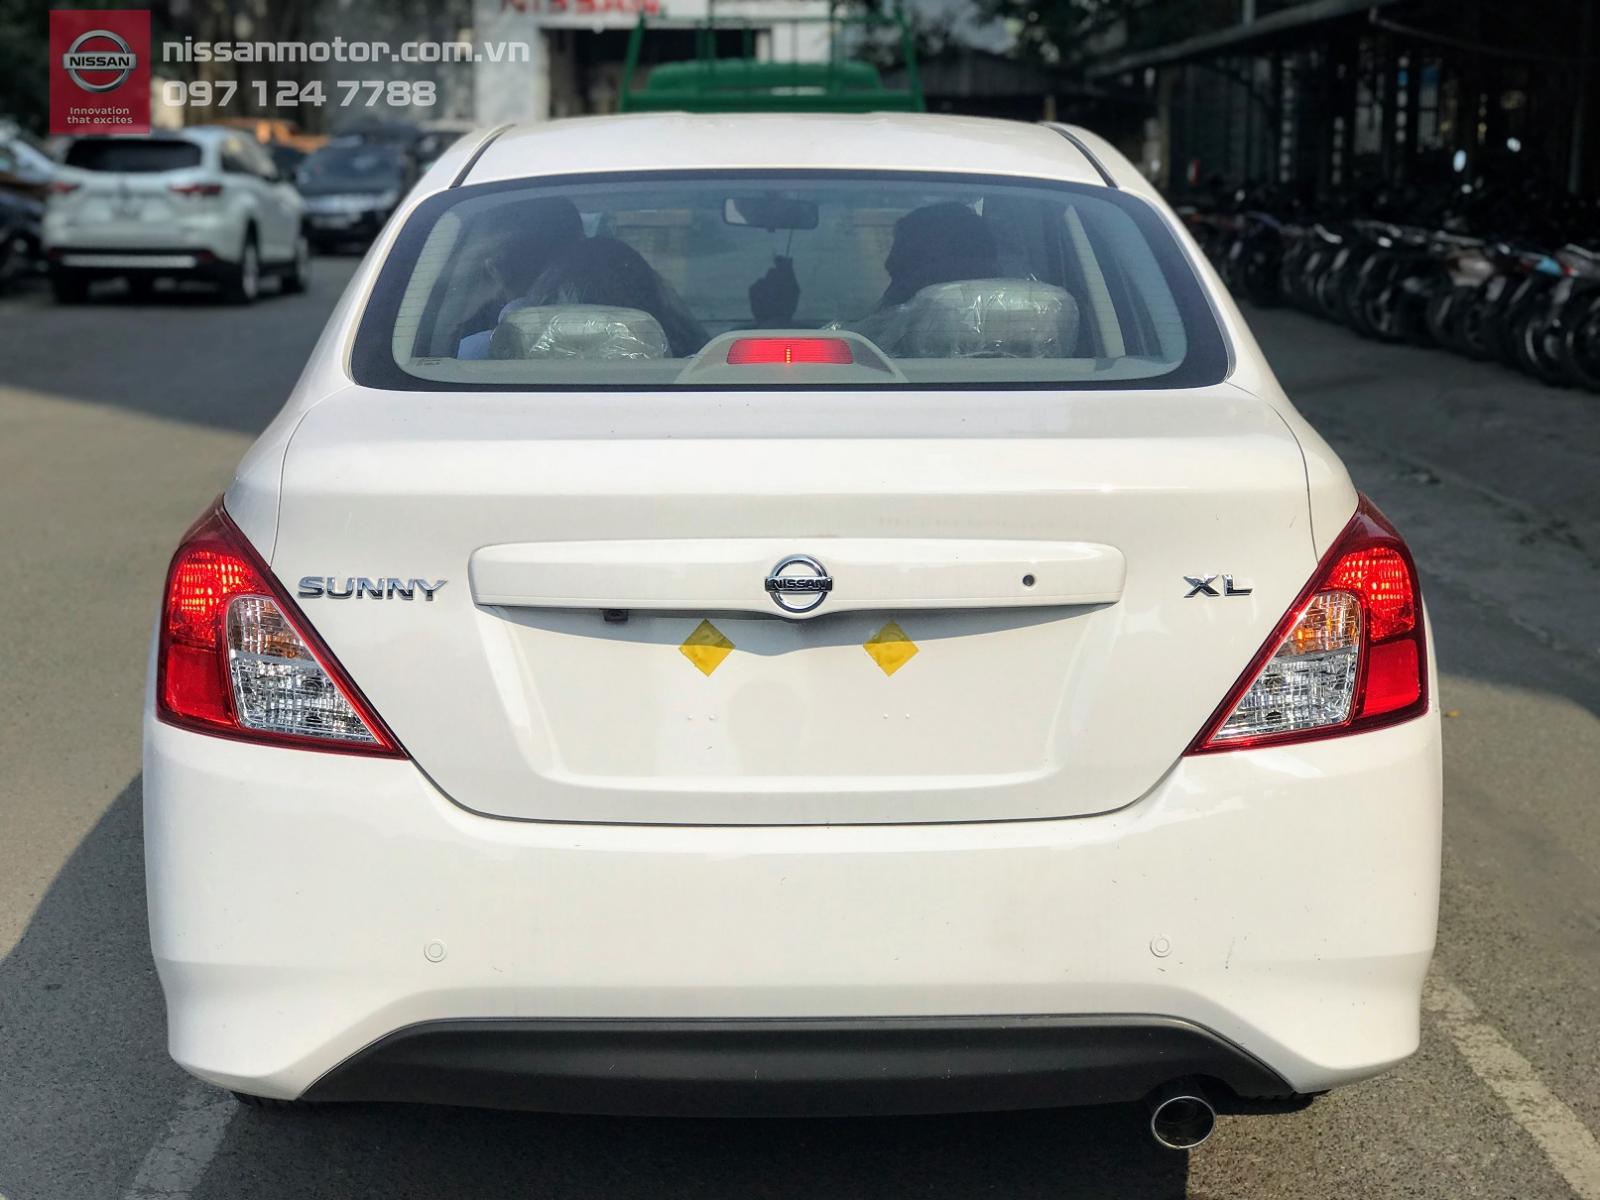 Nissan Sunny XL 2019 - Nissan Sunny XL số sàn 2019, giá tốt giao xe ngay, nhiều ưu đãi